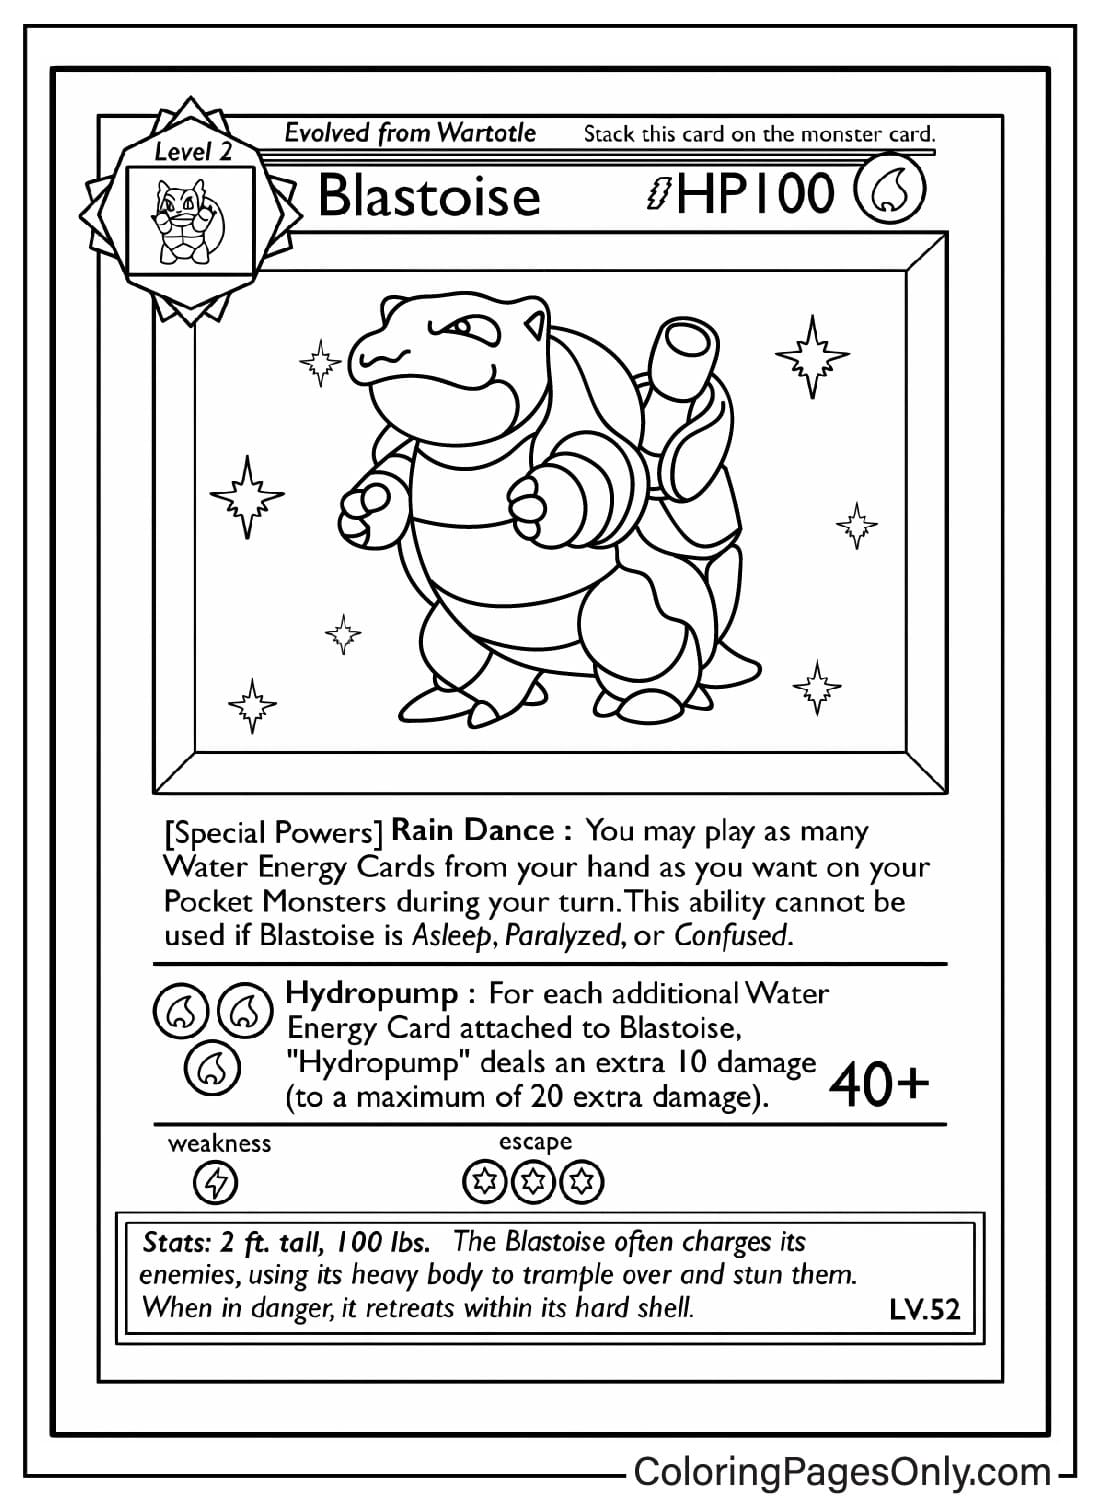 Foglio da colorare per carte Pokemon Blastoise da Pokemon Card